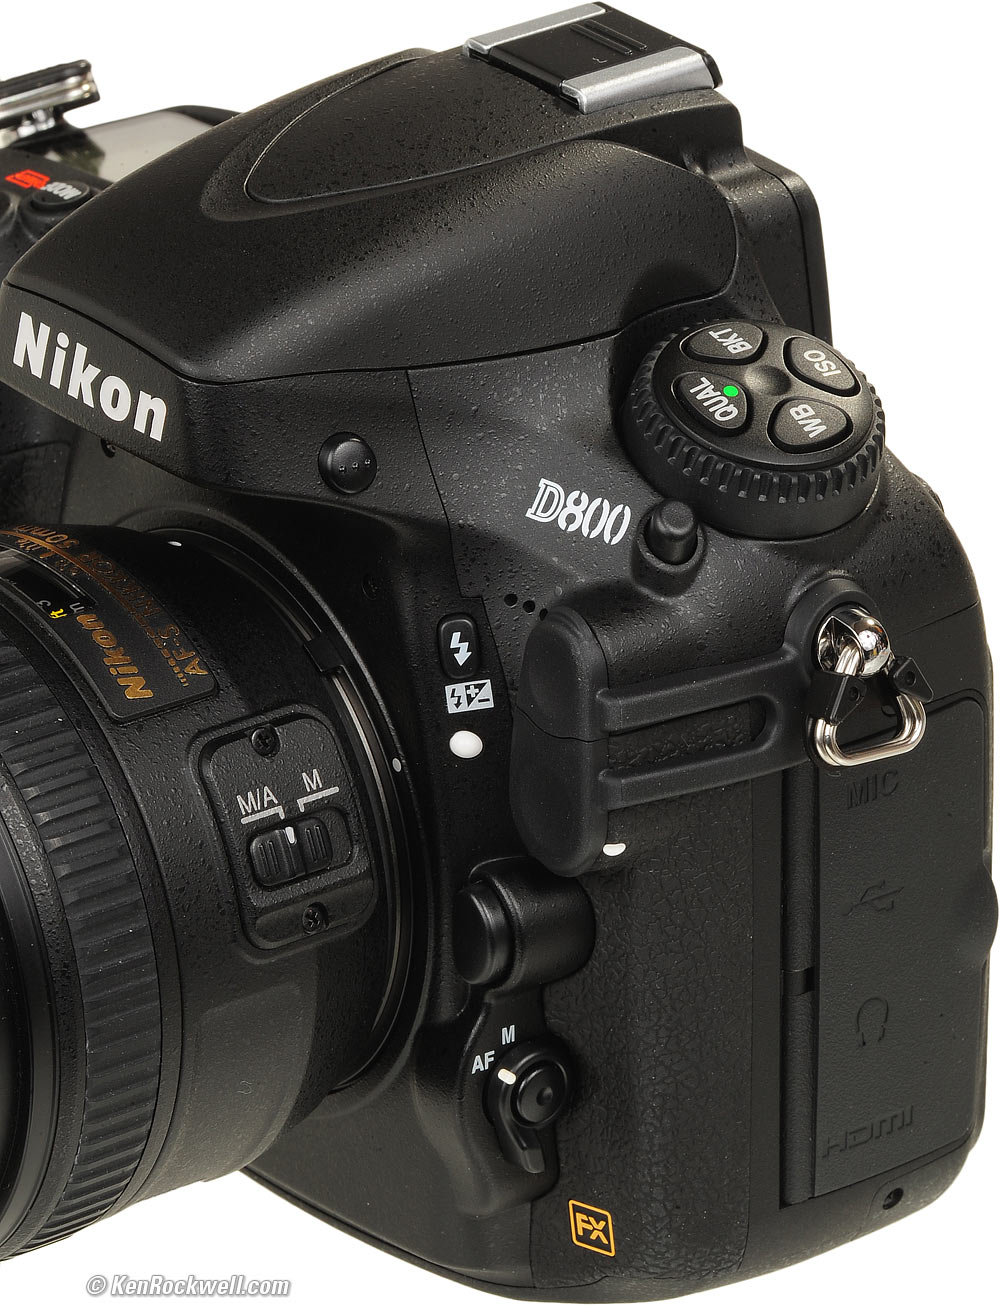 Souvenir Merchandising Trots Nikon D800 & D800E Review